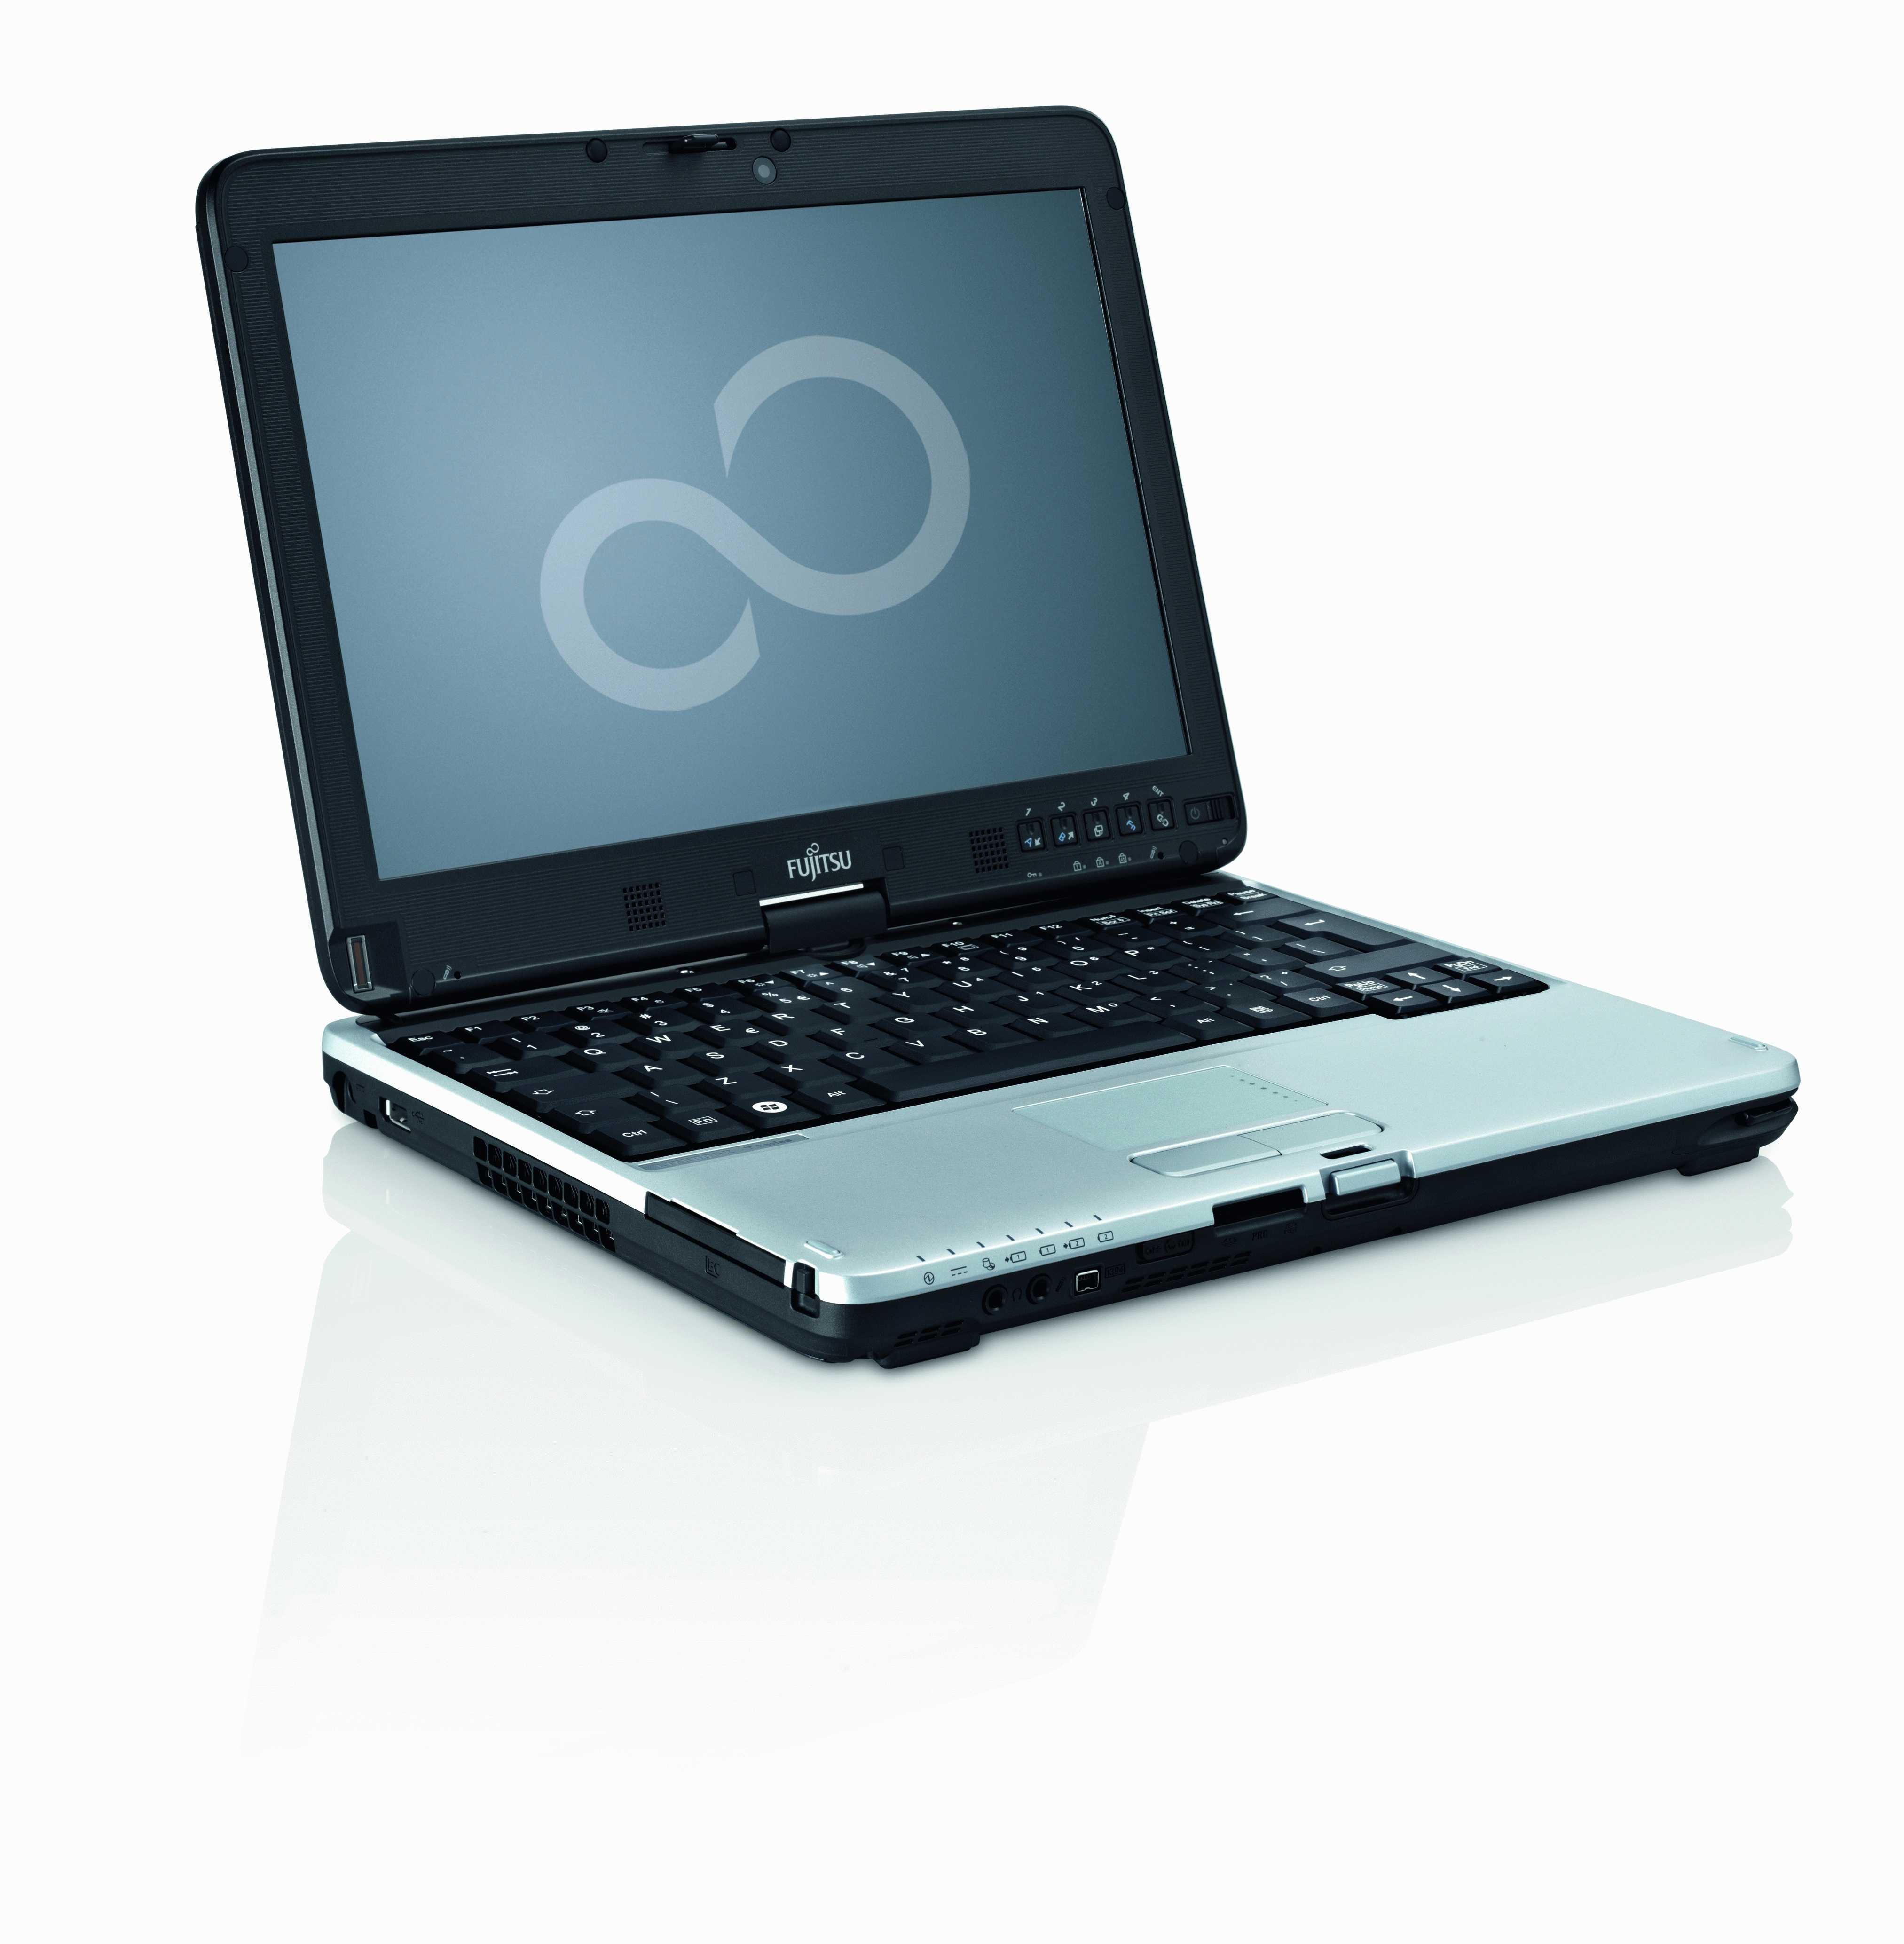 Ноутбук Fujitsu Lifebook AH531 (AH531MRLG5RU) - подробные характеристики обзоры видео фото Цены в интернет-магазинах где можно купить ноутбук Fujitsu Lifebook AH531 (AH531MRLG5RU)